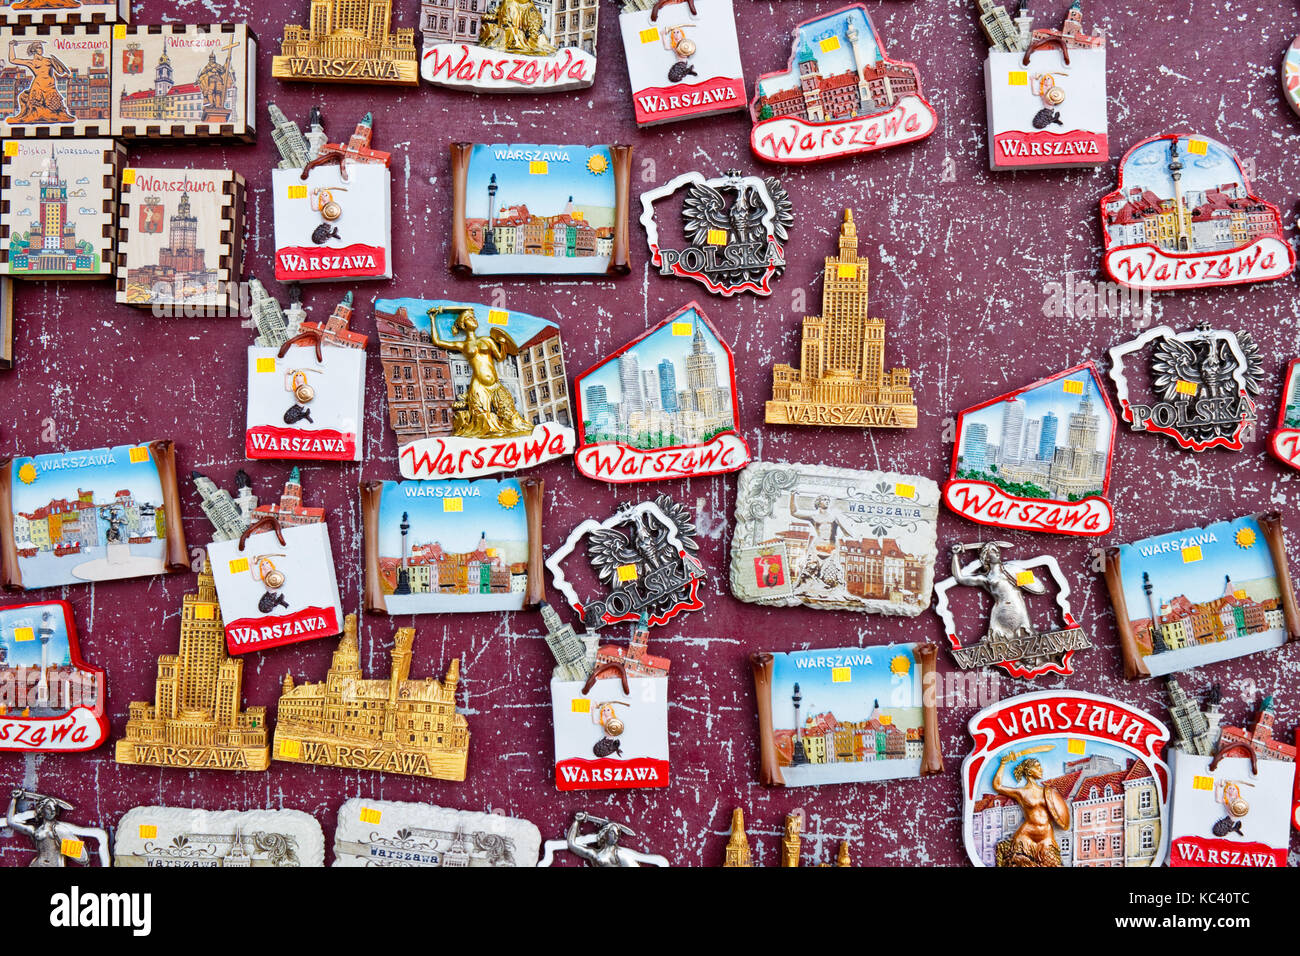 Varsovie, Pologne - Octobre 9, 2015 : aimants souvenirs illustrant des lieux et symboles de Varsovie en vente sur un stand de souvenirs. Banque D'Images